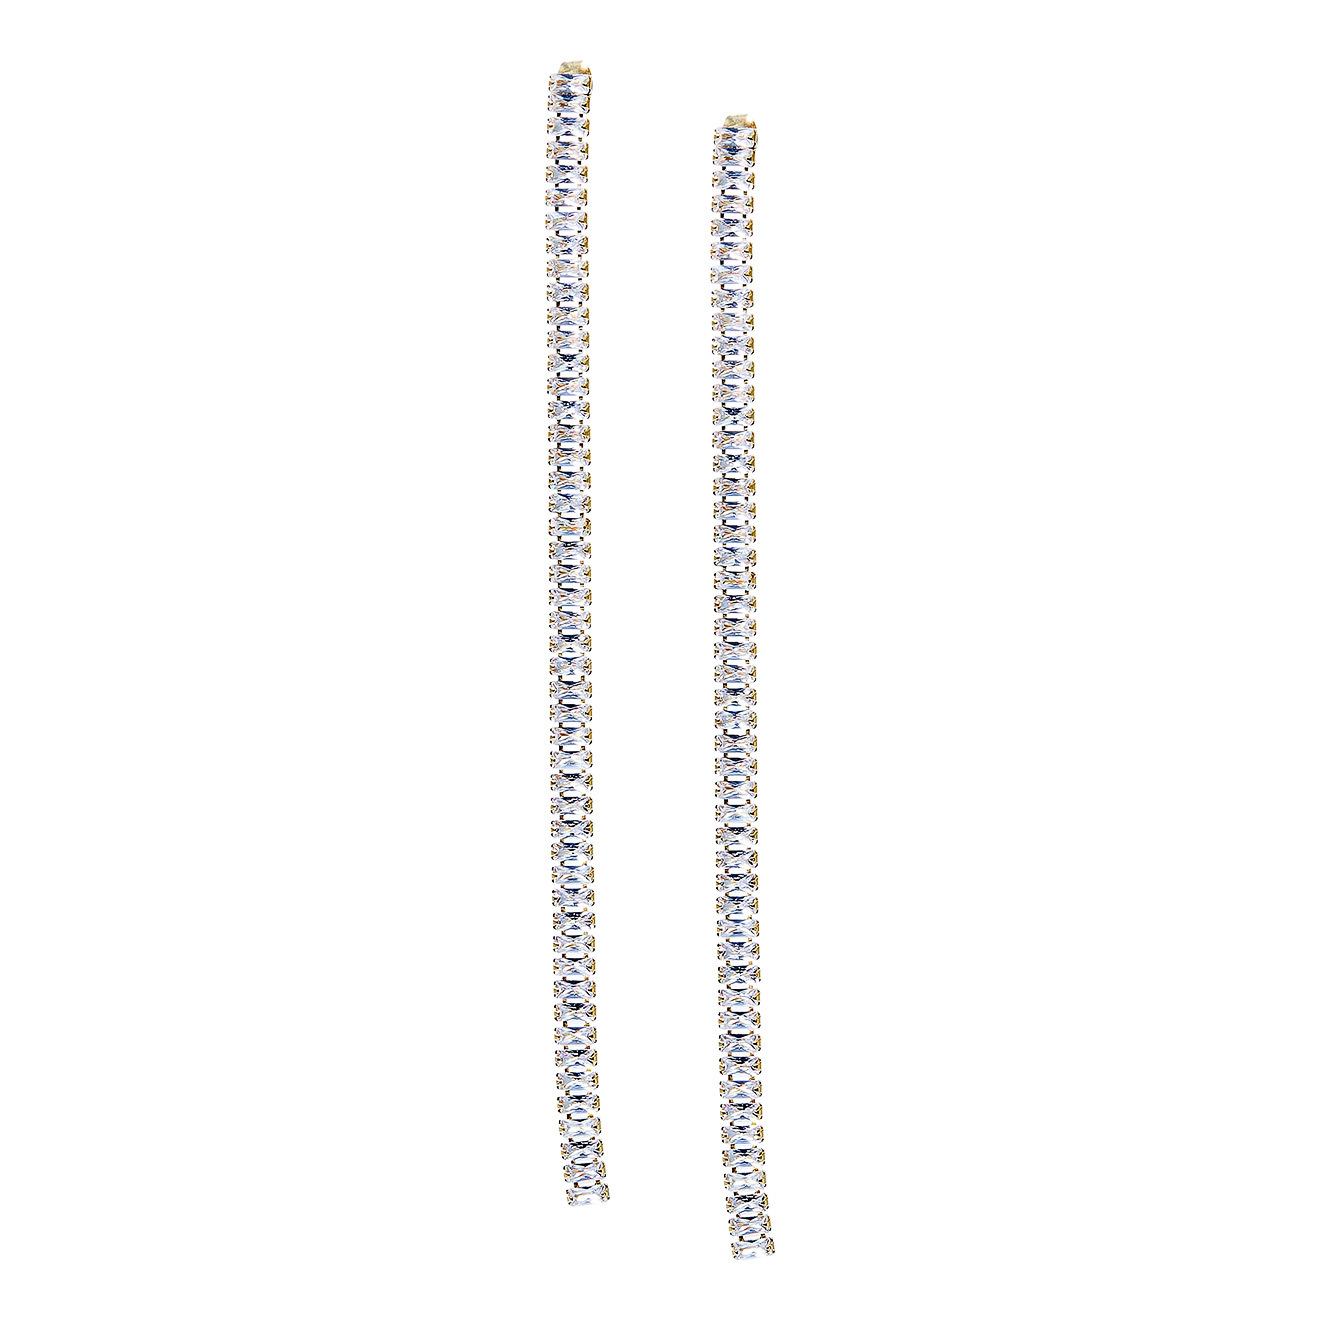 Herald Percy Золотистые длинные серьги-дорожки с кристаллами 38972